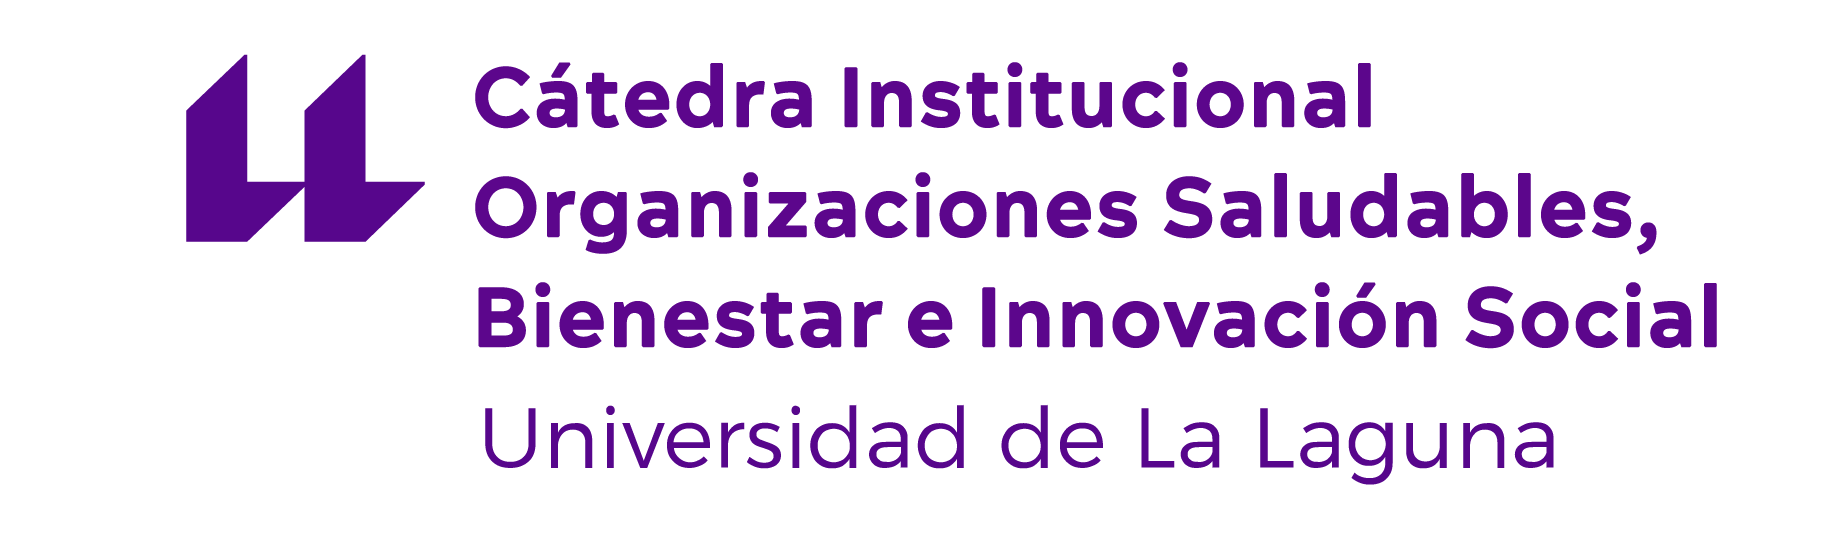 Cátedra Institucional de Organizaciones Saludables, Bienestar e Innovación Social